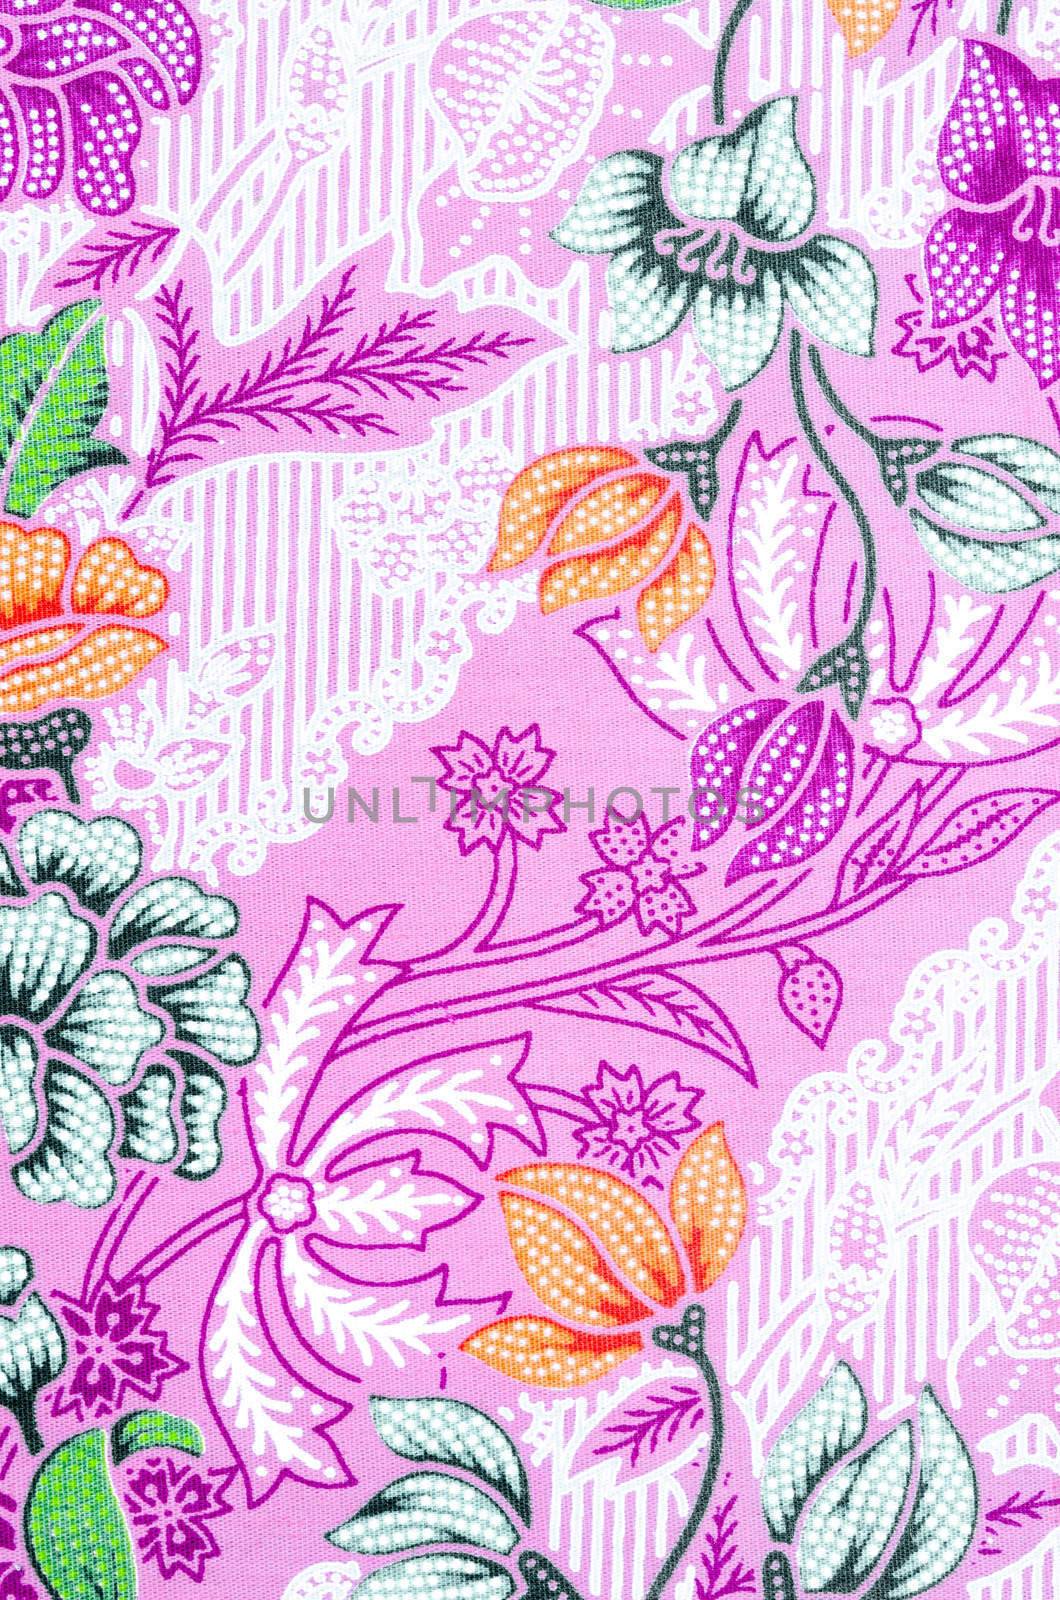 Beautiful pink batik patterns. by Gamjai